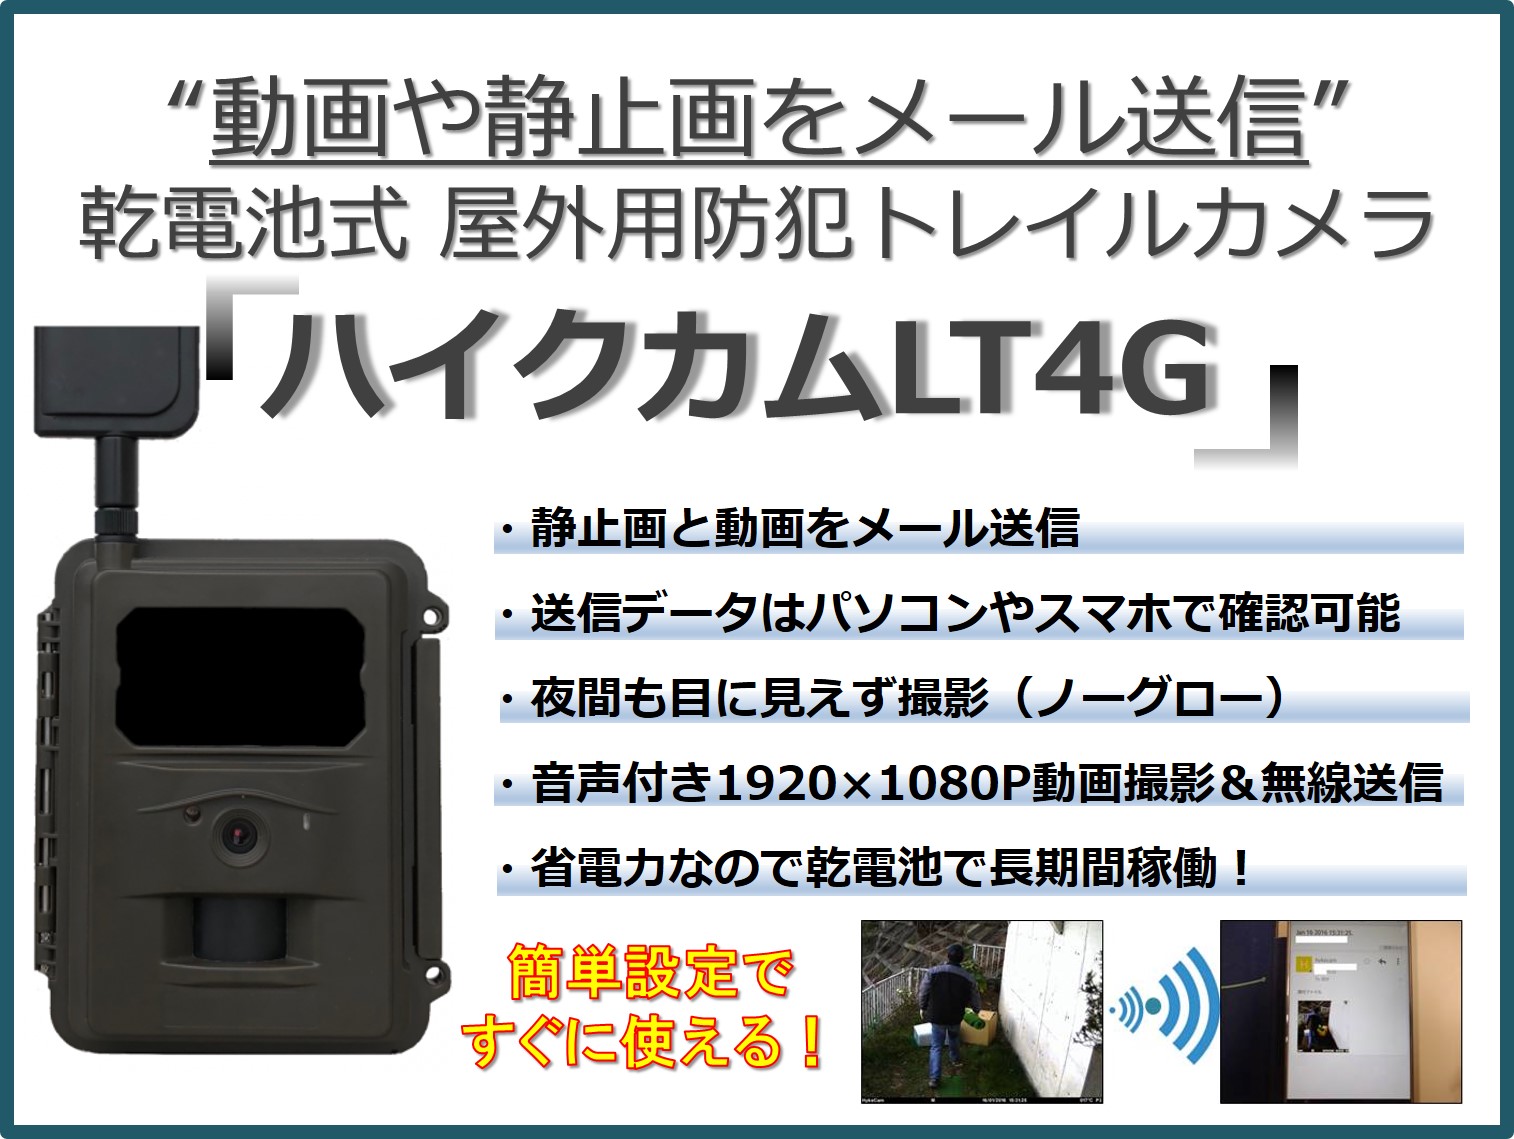 屋外防犯トレイルカメラ「ハイクカムLT4G SIMカード付き SMS機能無し」